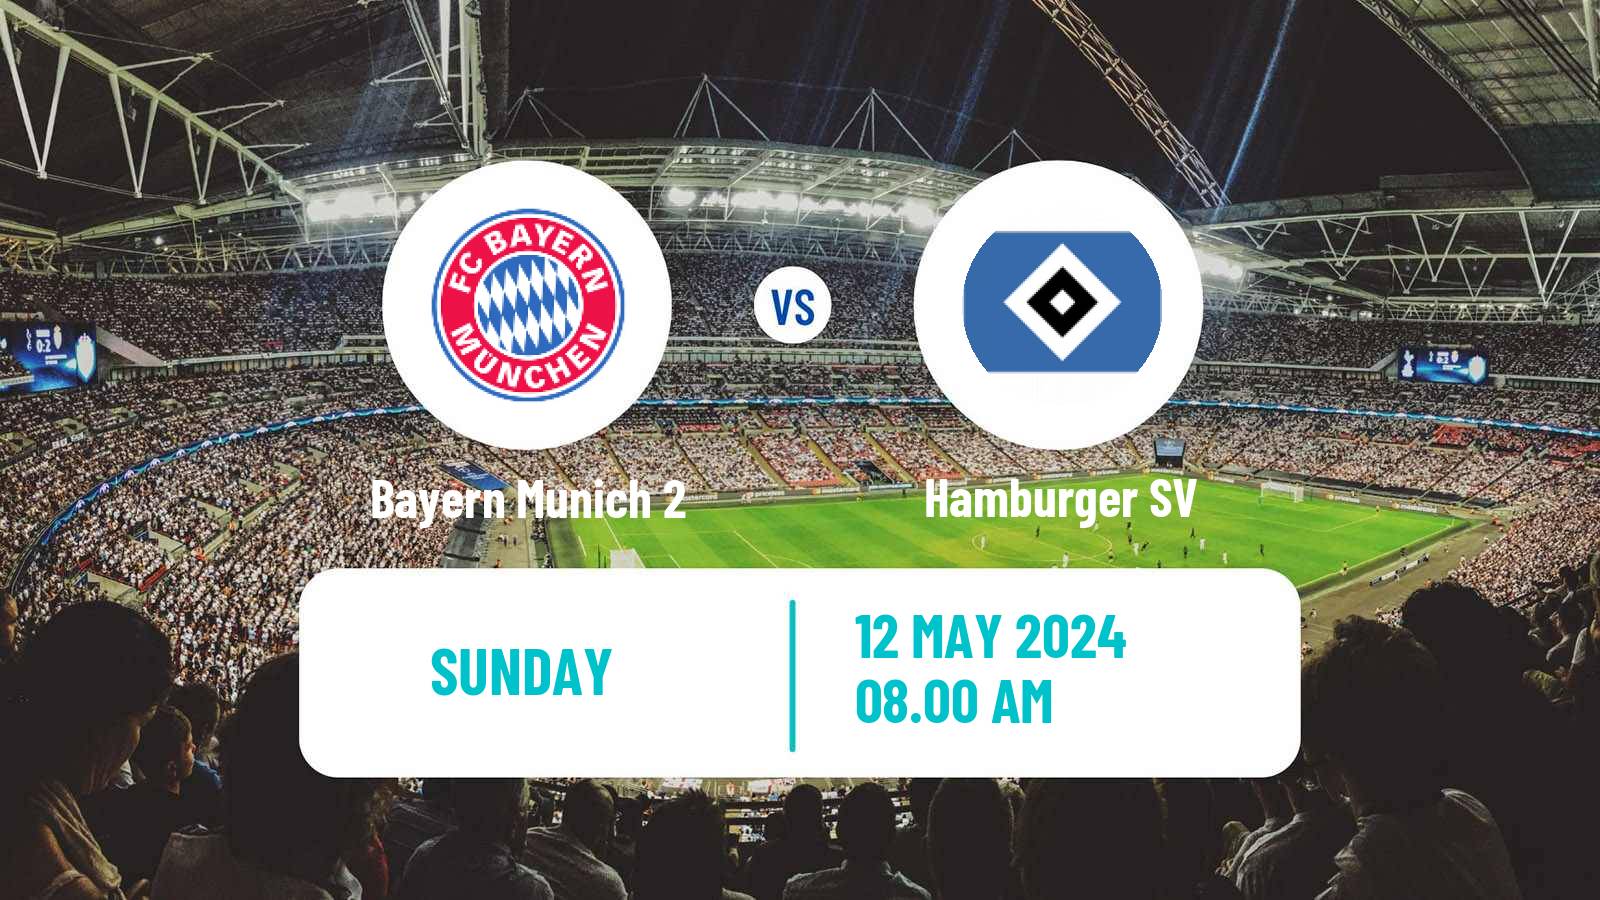 Soccer German 2 Bundesliga Women Bayern Munich 2 - Hamburger SV